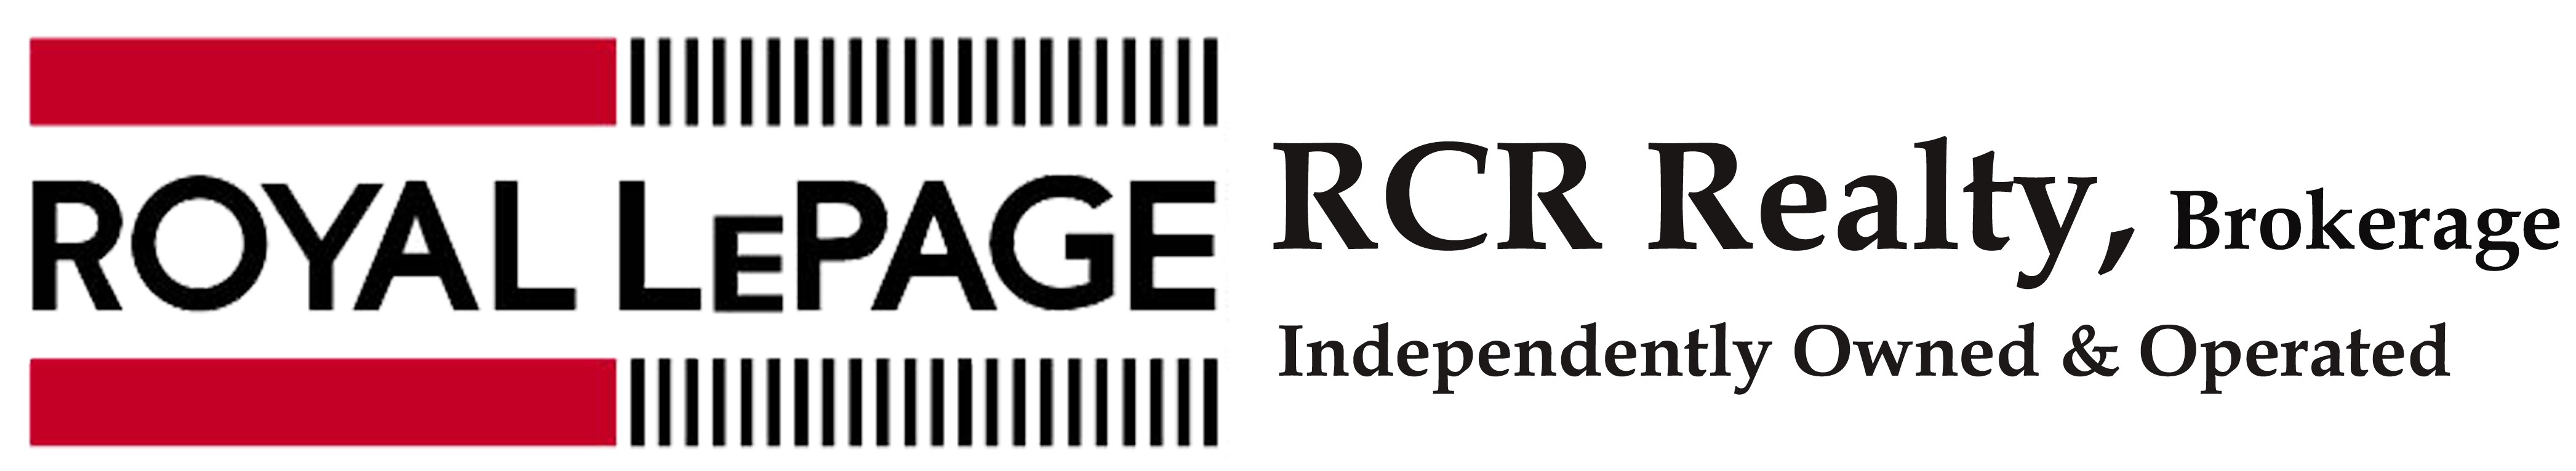 Royal LePage RCR Realty Inc., Brokerage